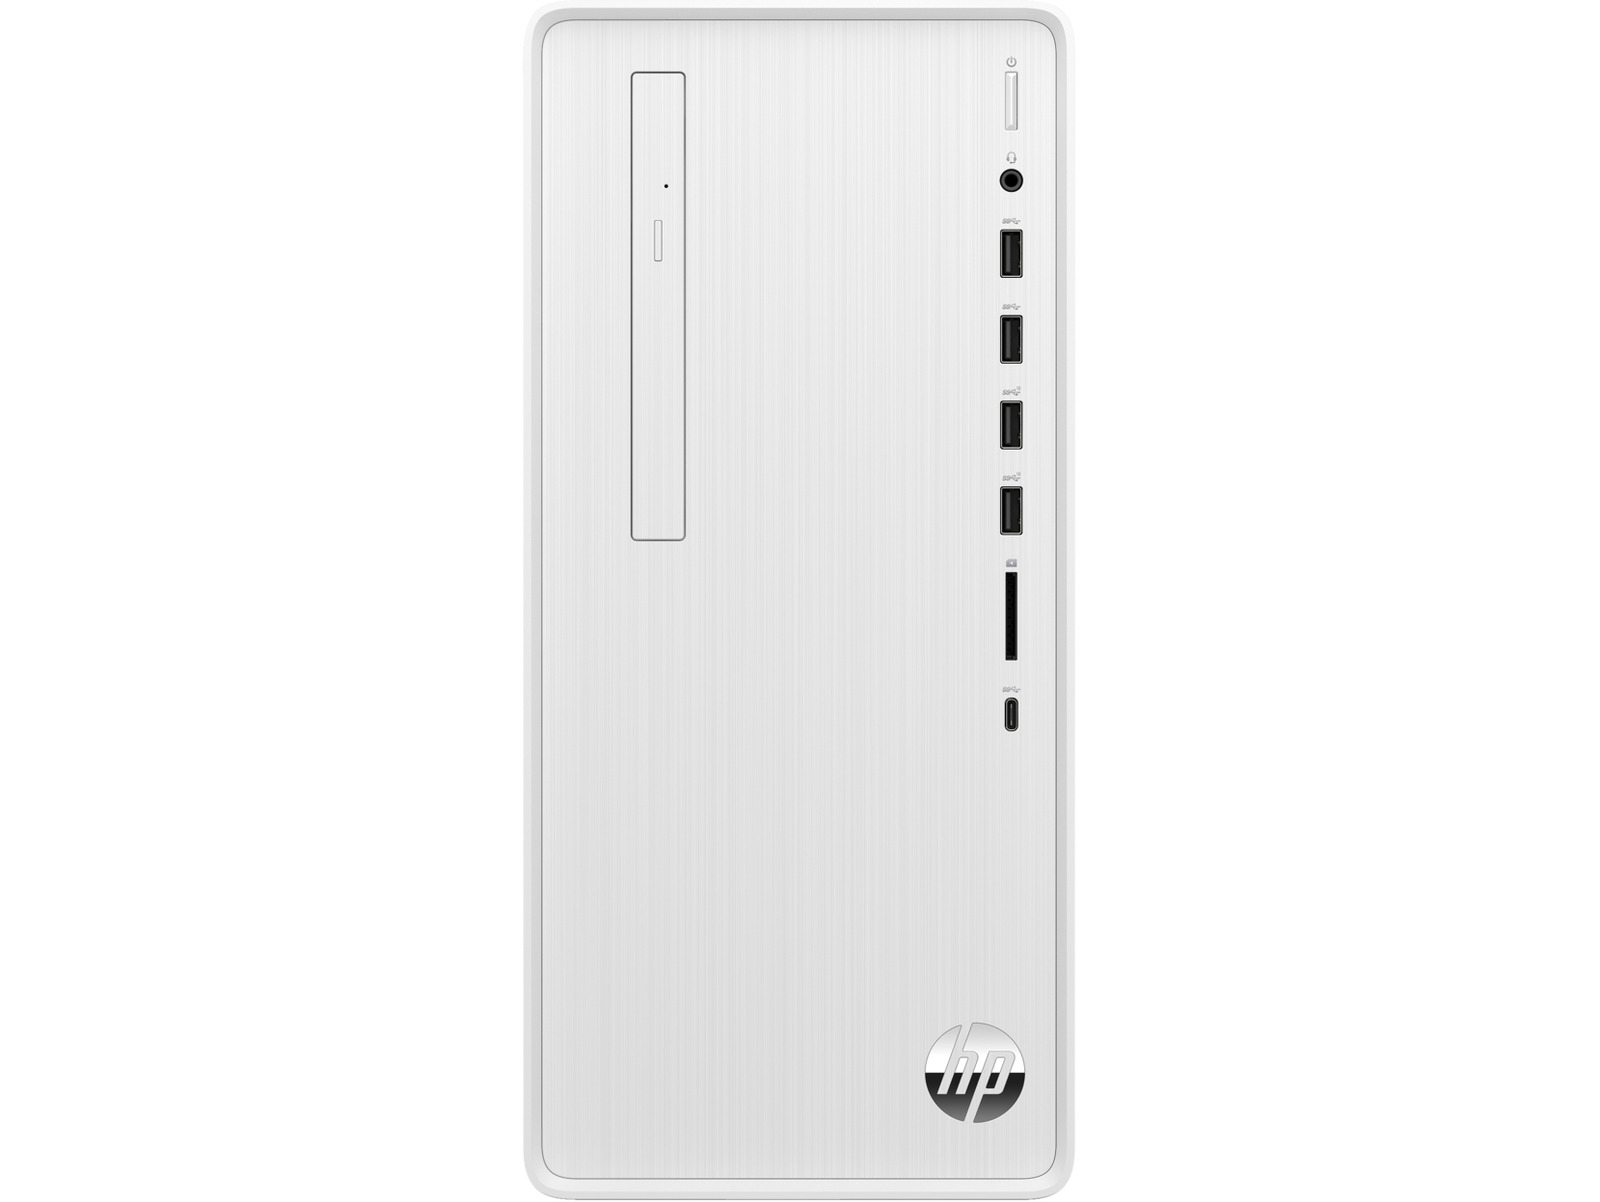 HP Pavilion Desktop 12th gen Intel Core i7, 16 GB; 2 TB HDD ; 512 GB SSD